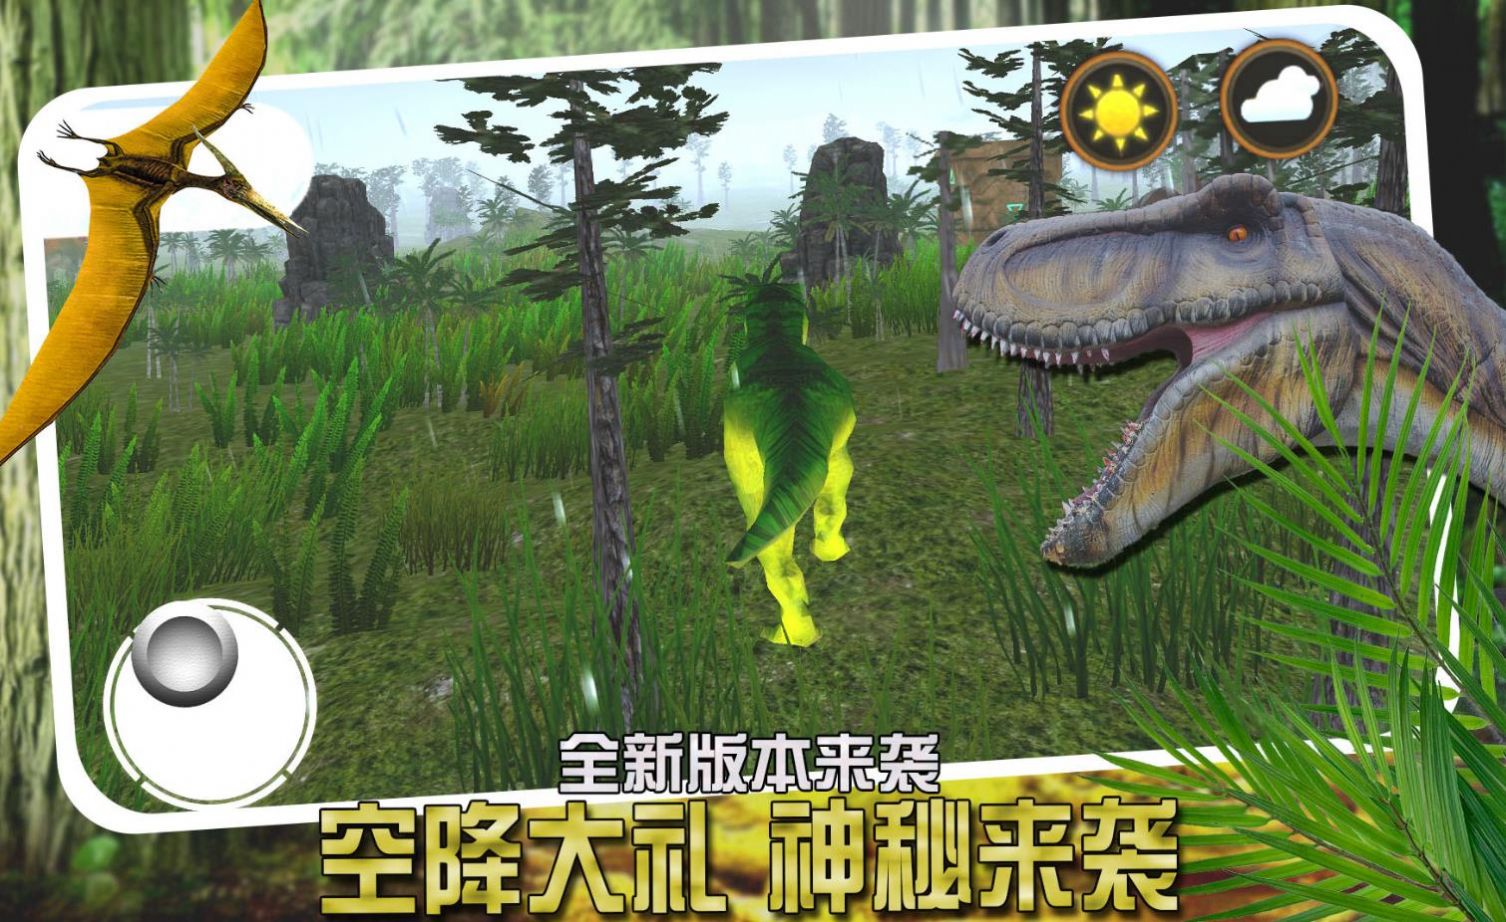 恐龙小镇模拟游戏最新安卓版 v1.0